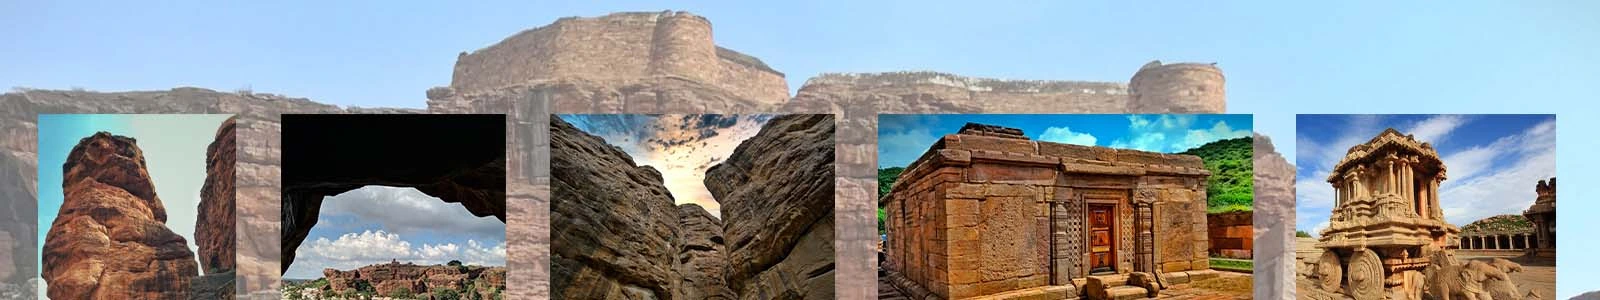 Tour of Badami, Pattadakal and Aihole